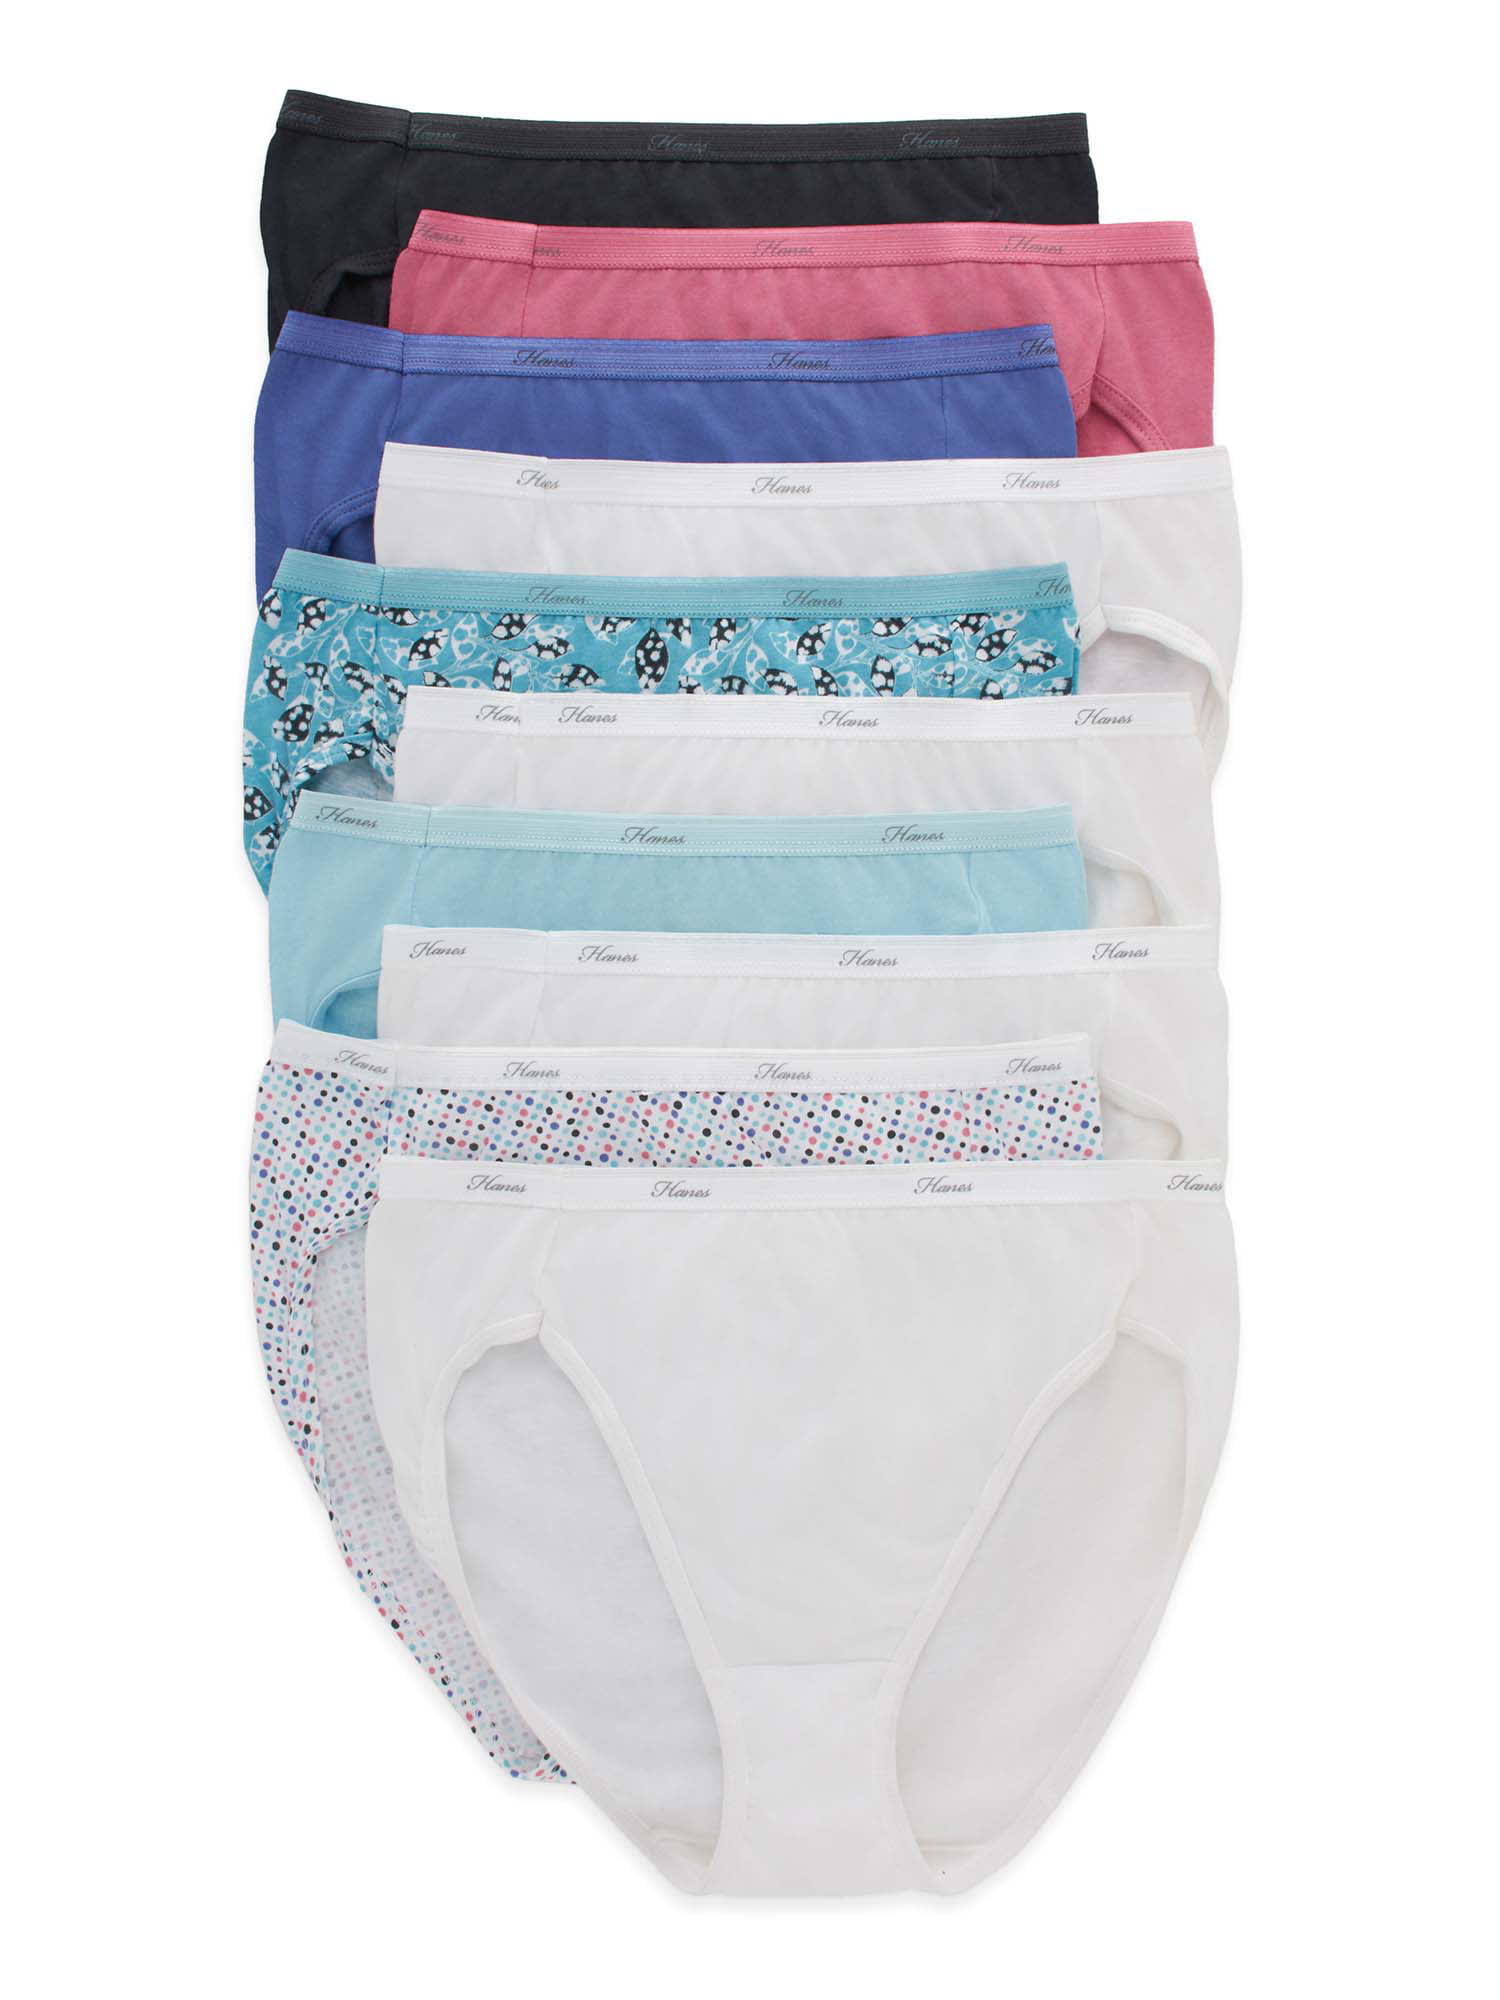  Hanes Womens Cotton Brief Underwear